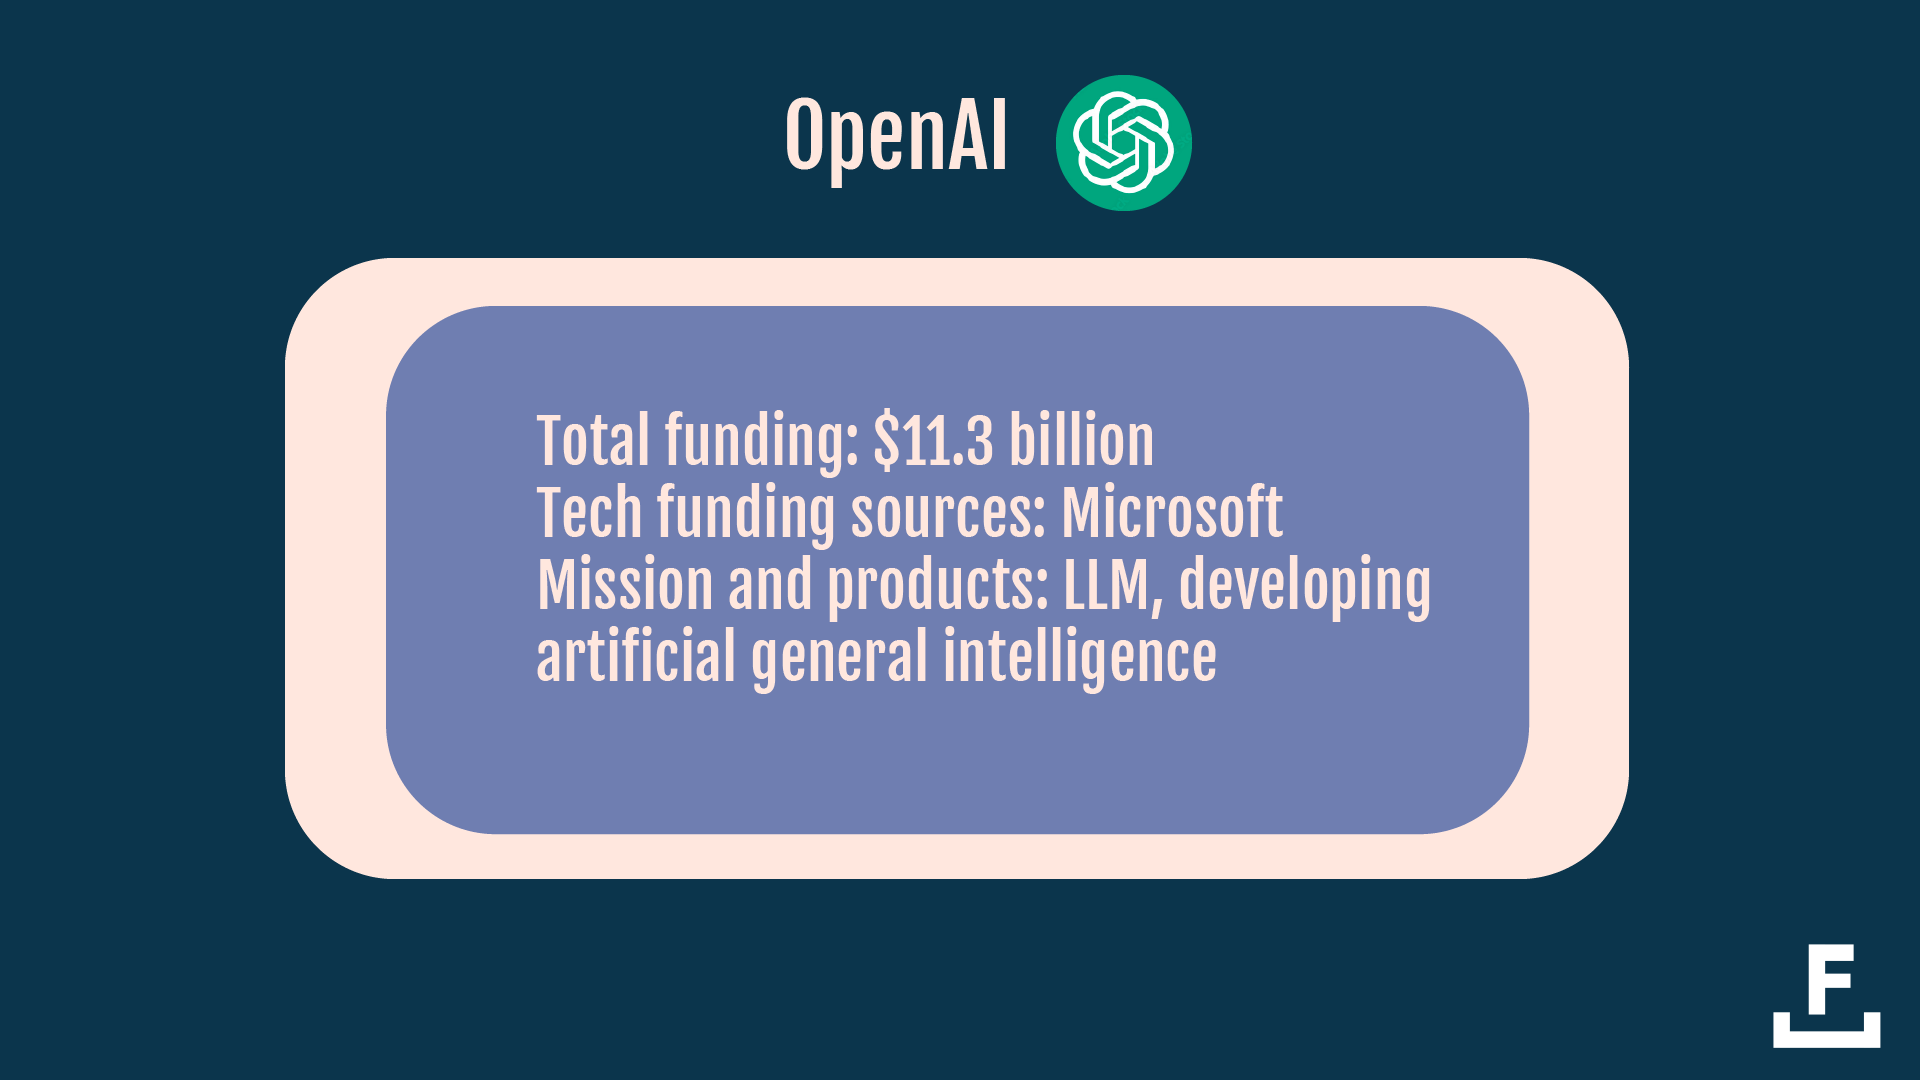 有關 OpenAI 的重要事實的描述